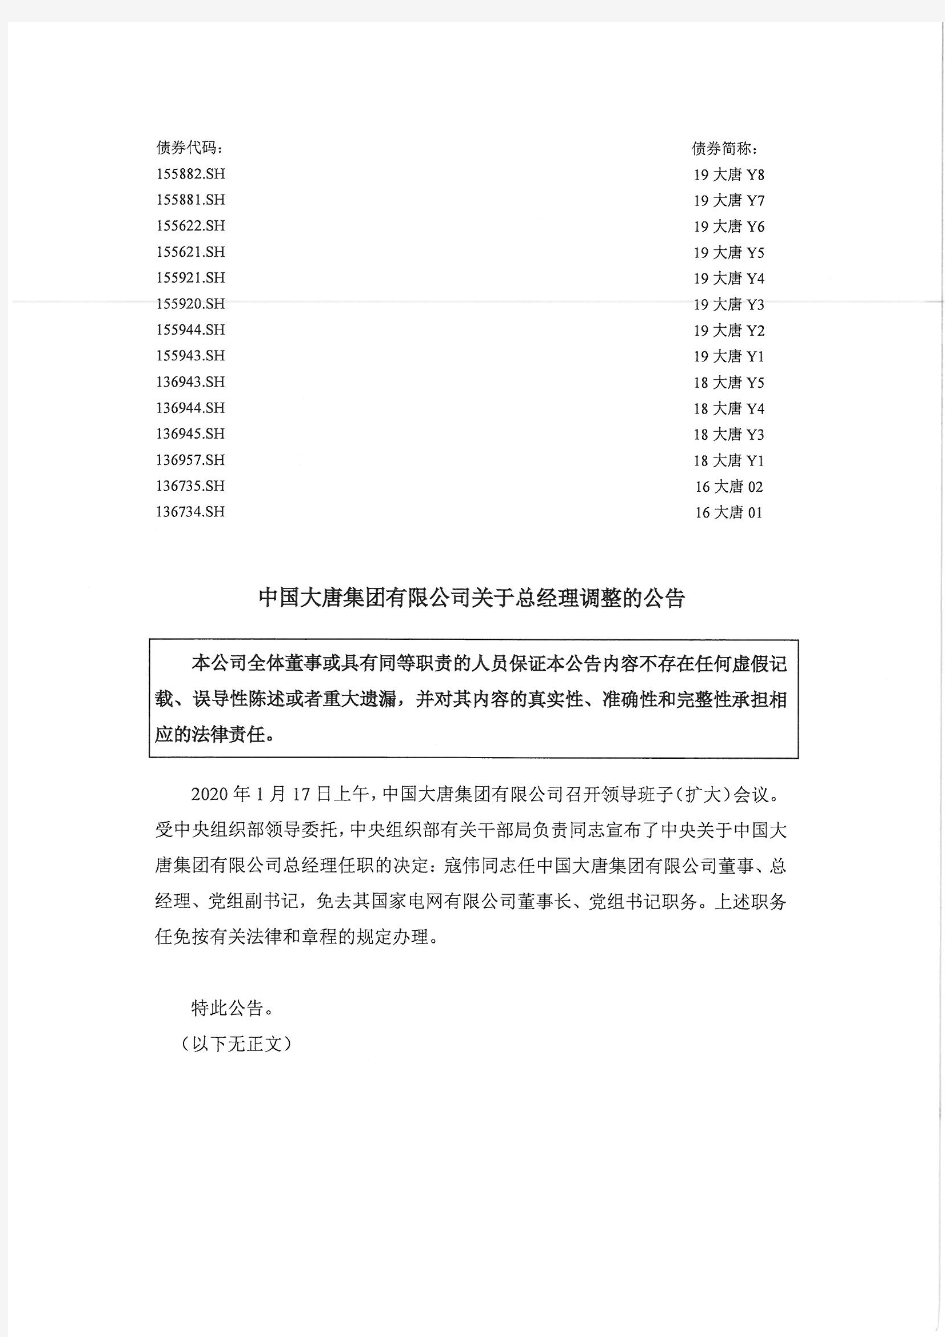 中国大唐集团有限公司关于总经理调整的公告 (10)